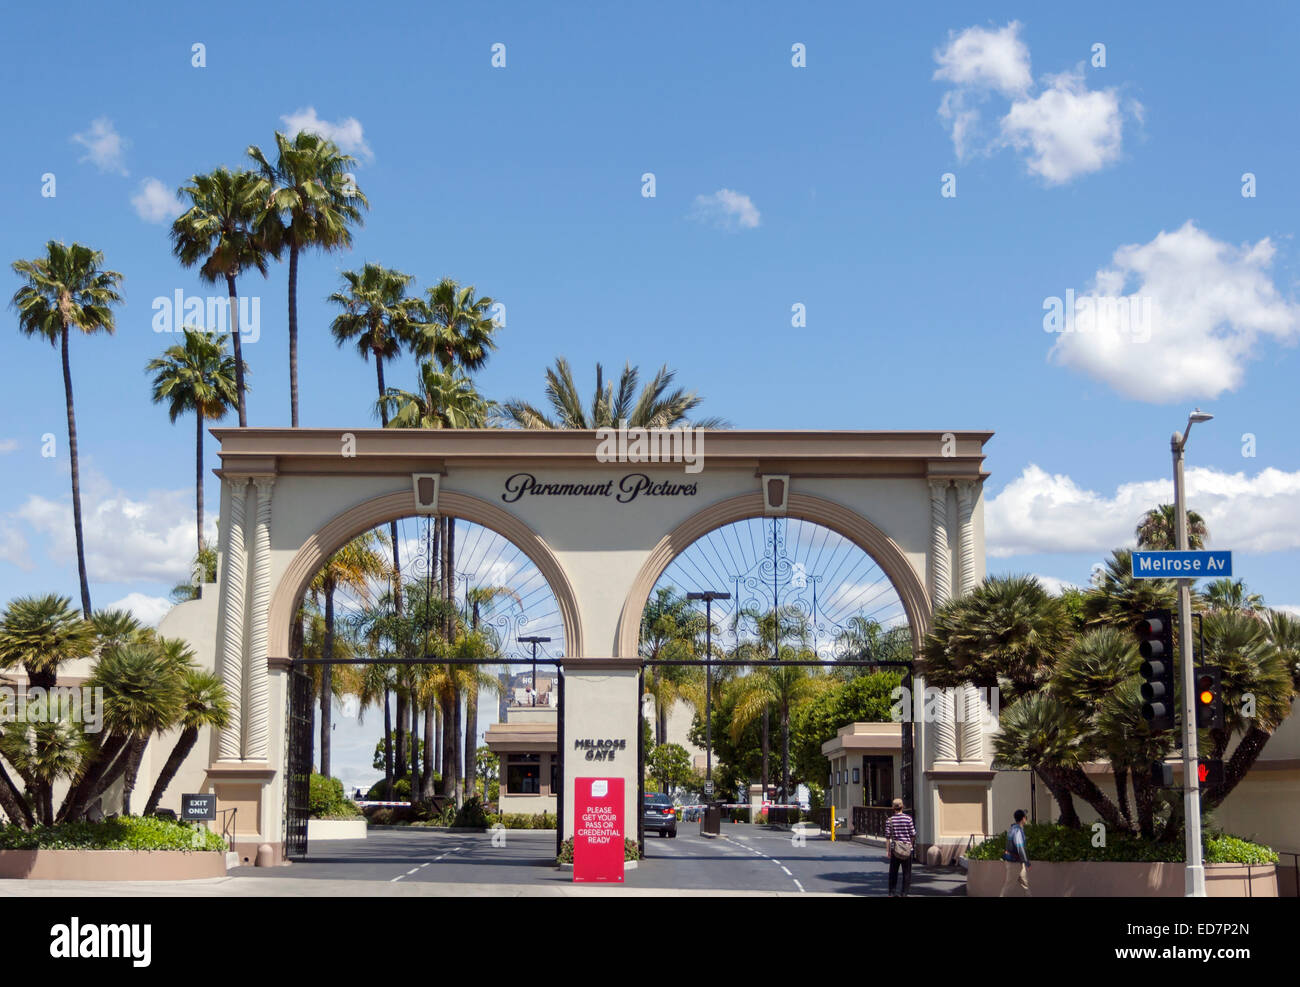 Hollywood e Los Angeles, California, Stati Uniti d'America. Il Melrose porta d'ingresso a Paramount Pictures di studio. Foto Stock